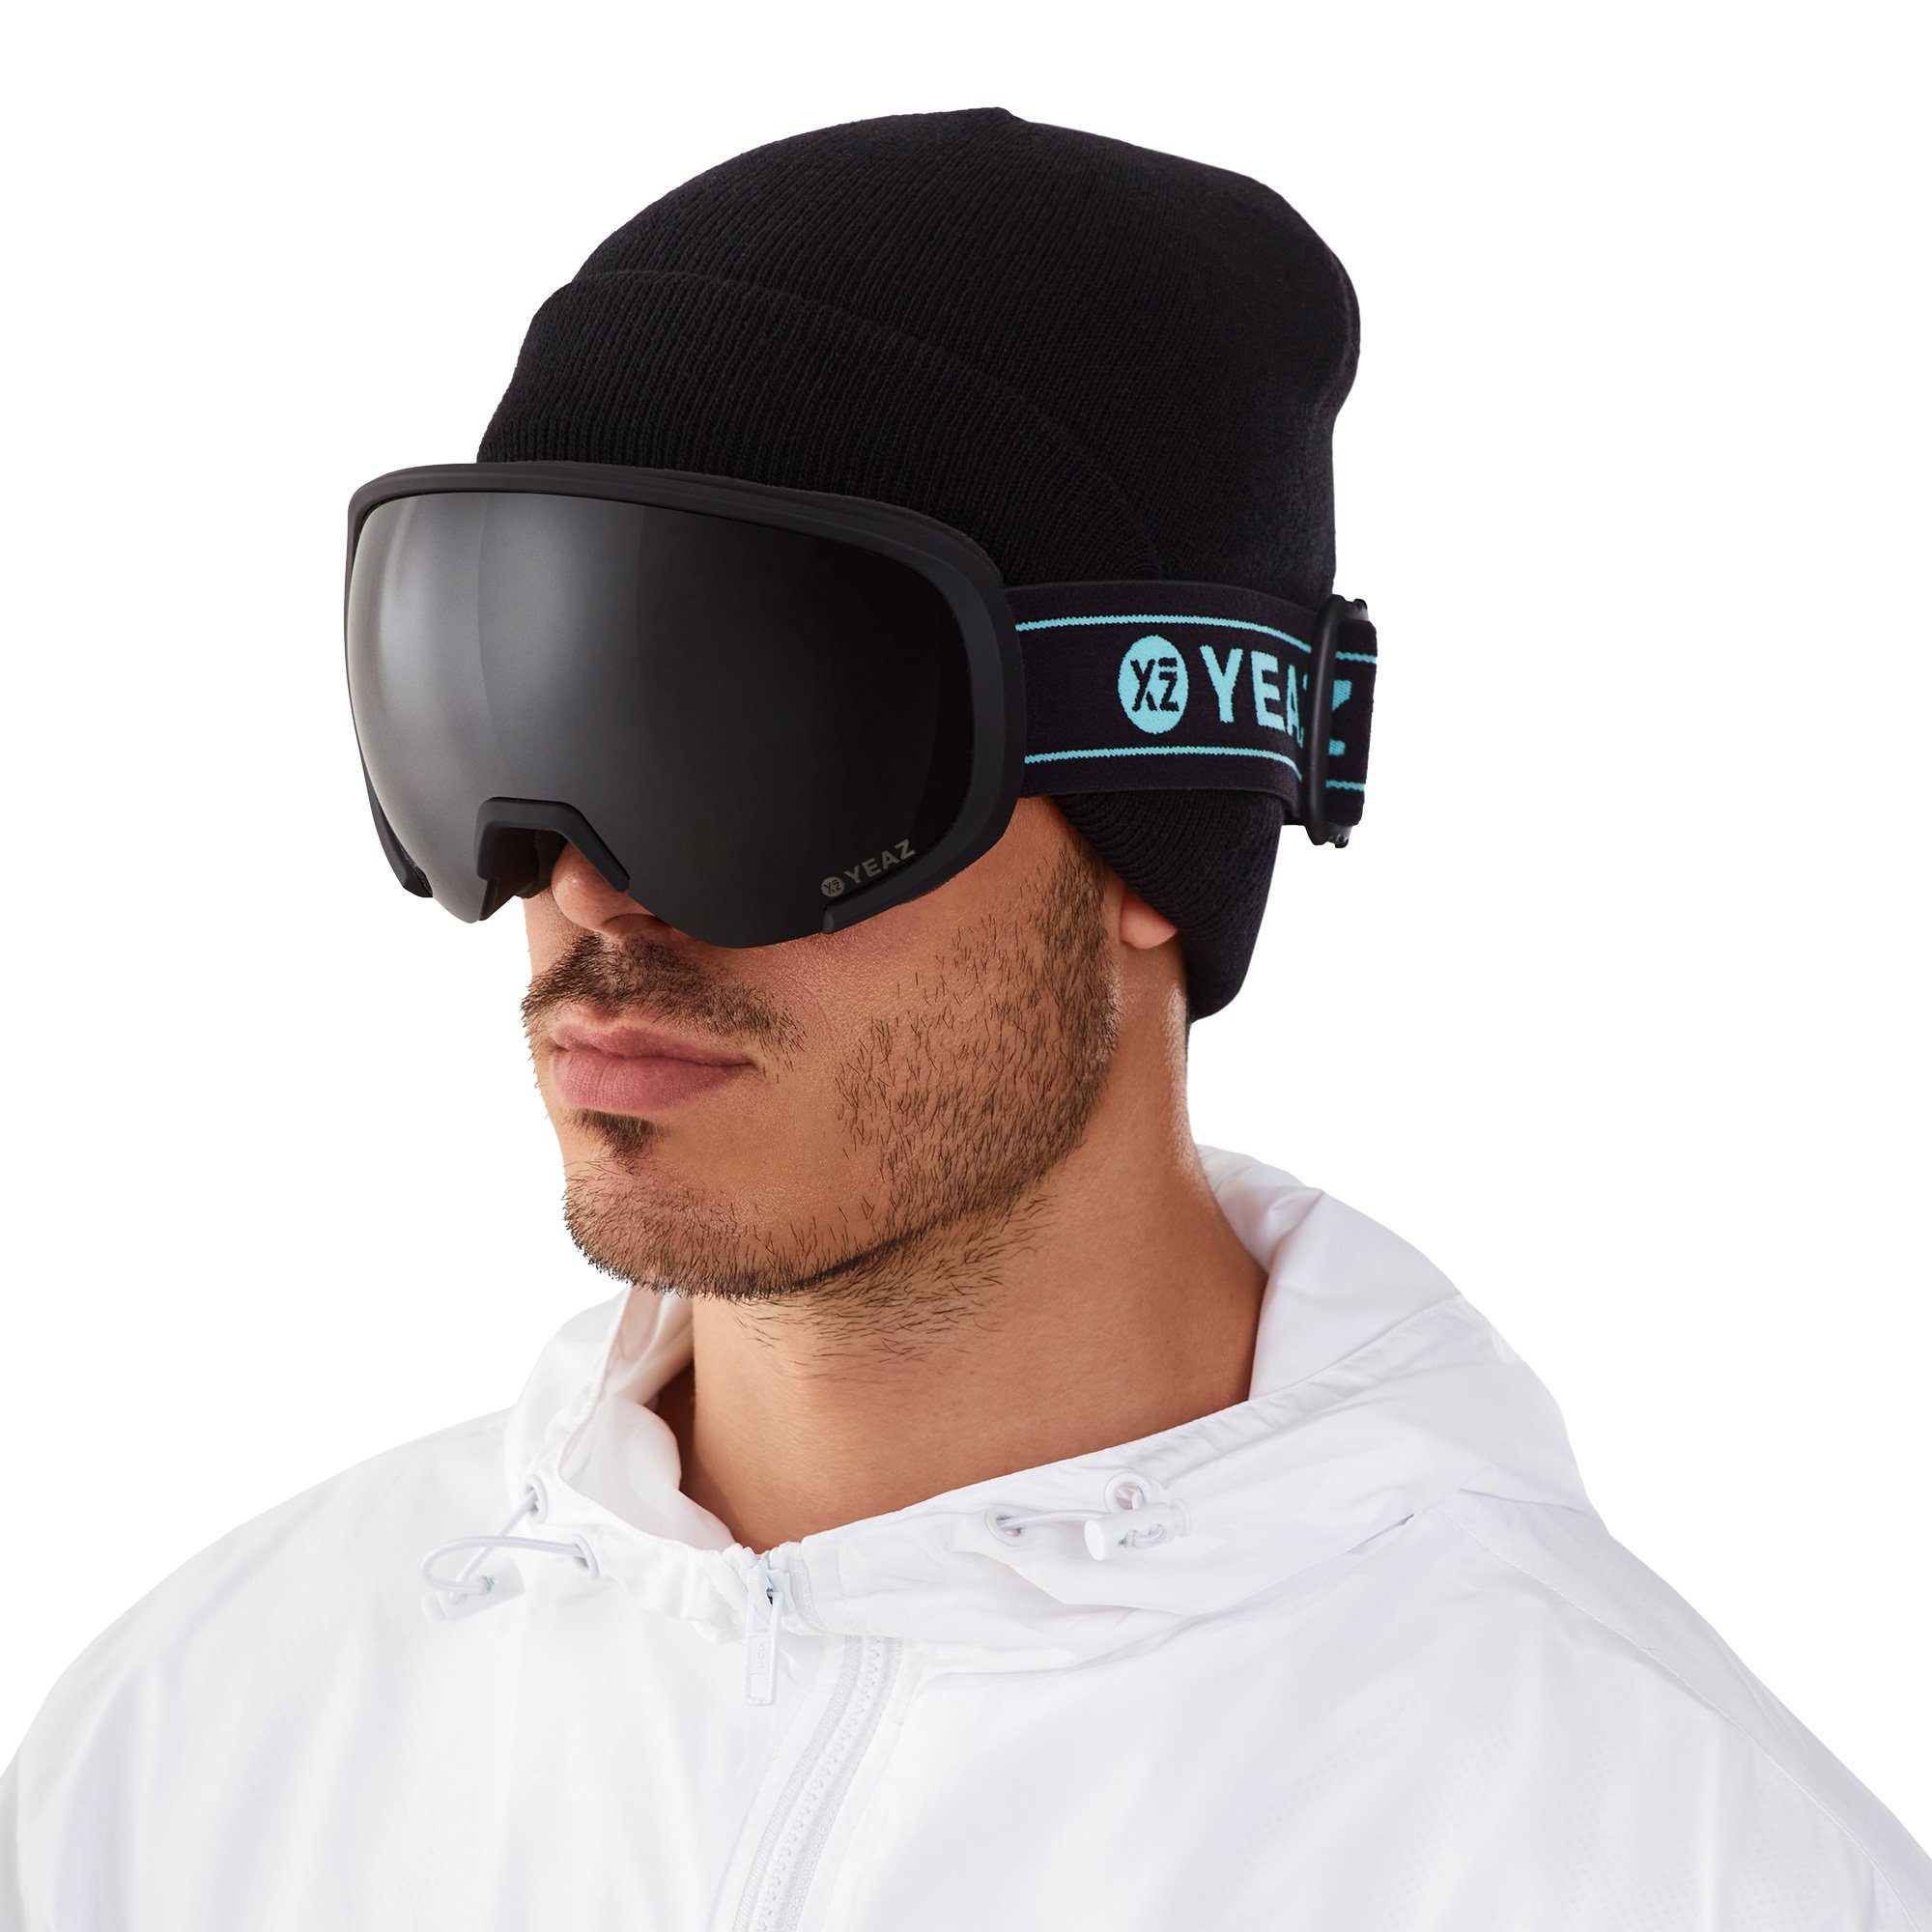 Versandhandel im Ausland zum niedrigsten Preis! YEAZ Skibrille BLACK RUN, Erwachsene und für Snowboardbrille Premium-Ski- und Jugendliche